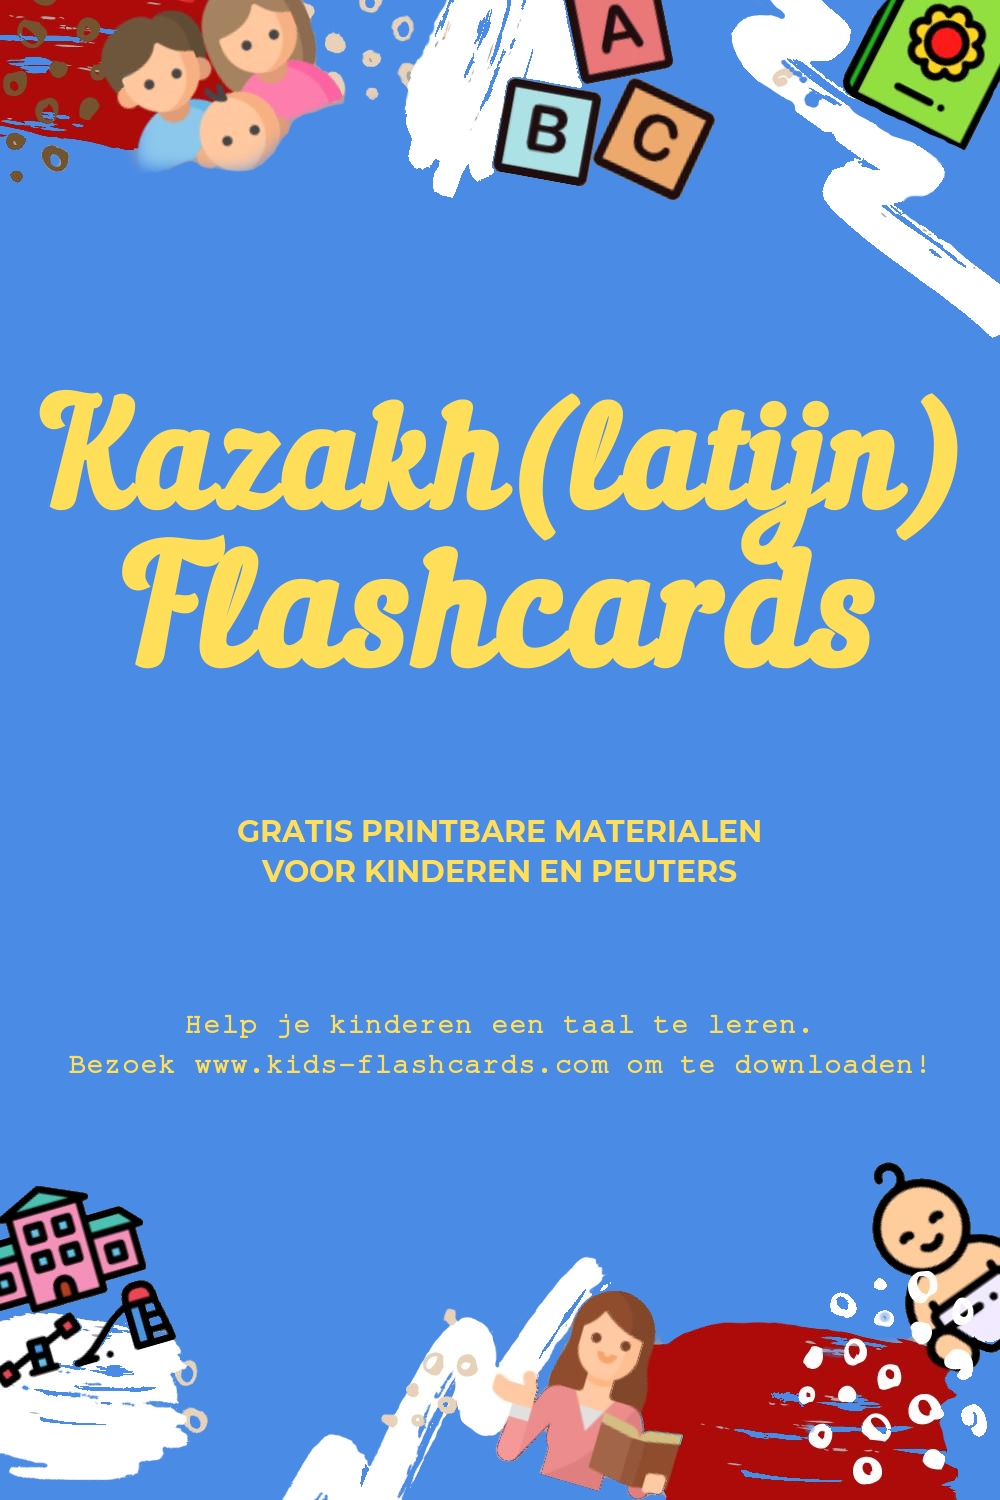 Werkbladen om Kazakh(latijn) te leren